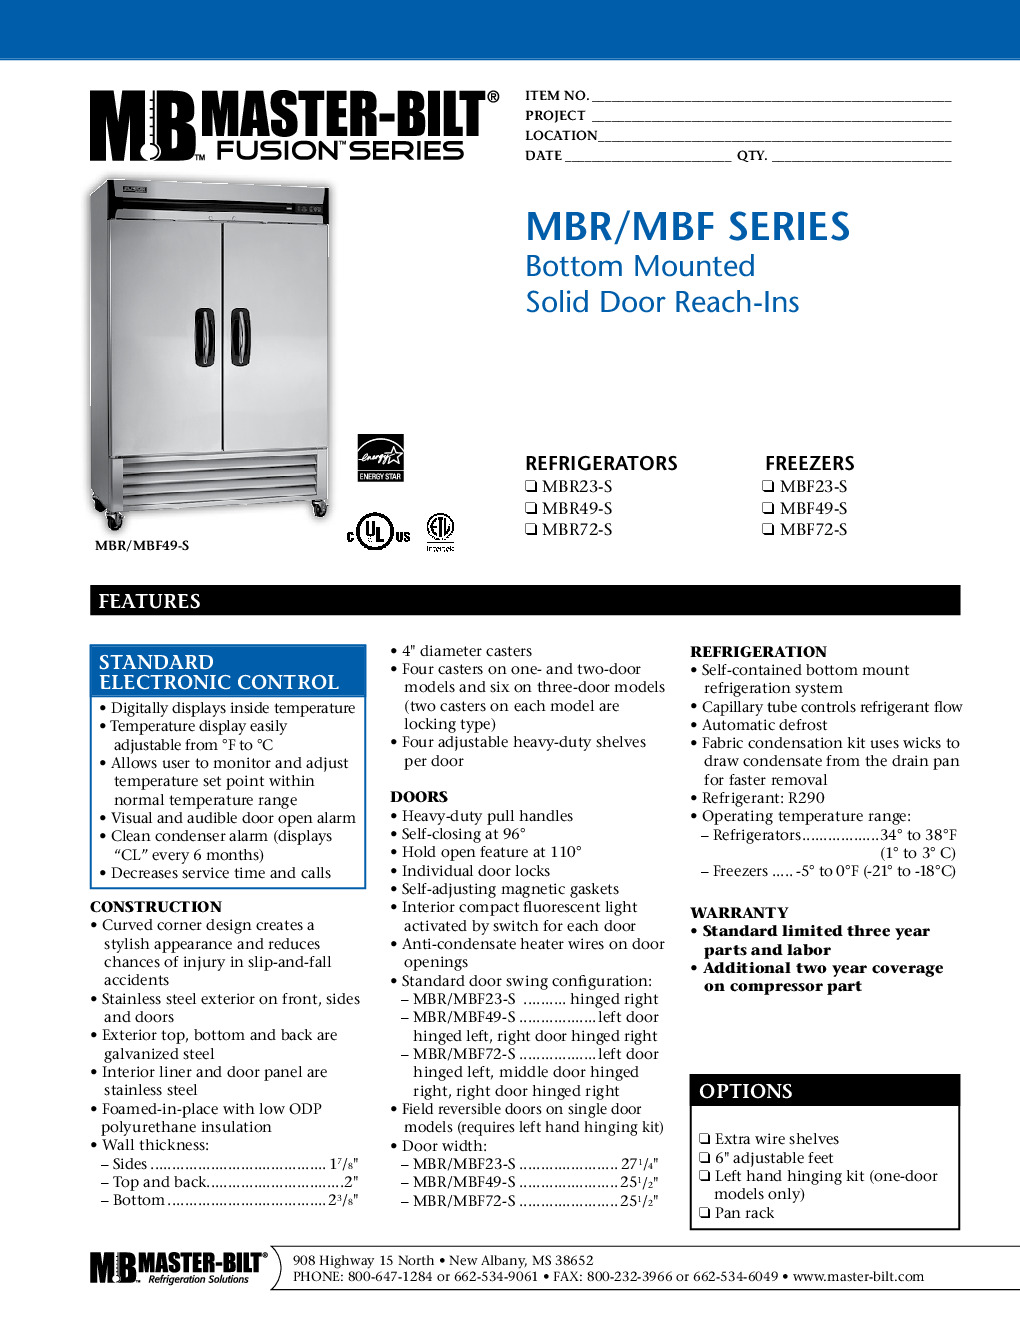 Master-Bilt MBF49-S Reach-In Freezer